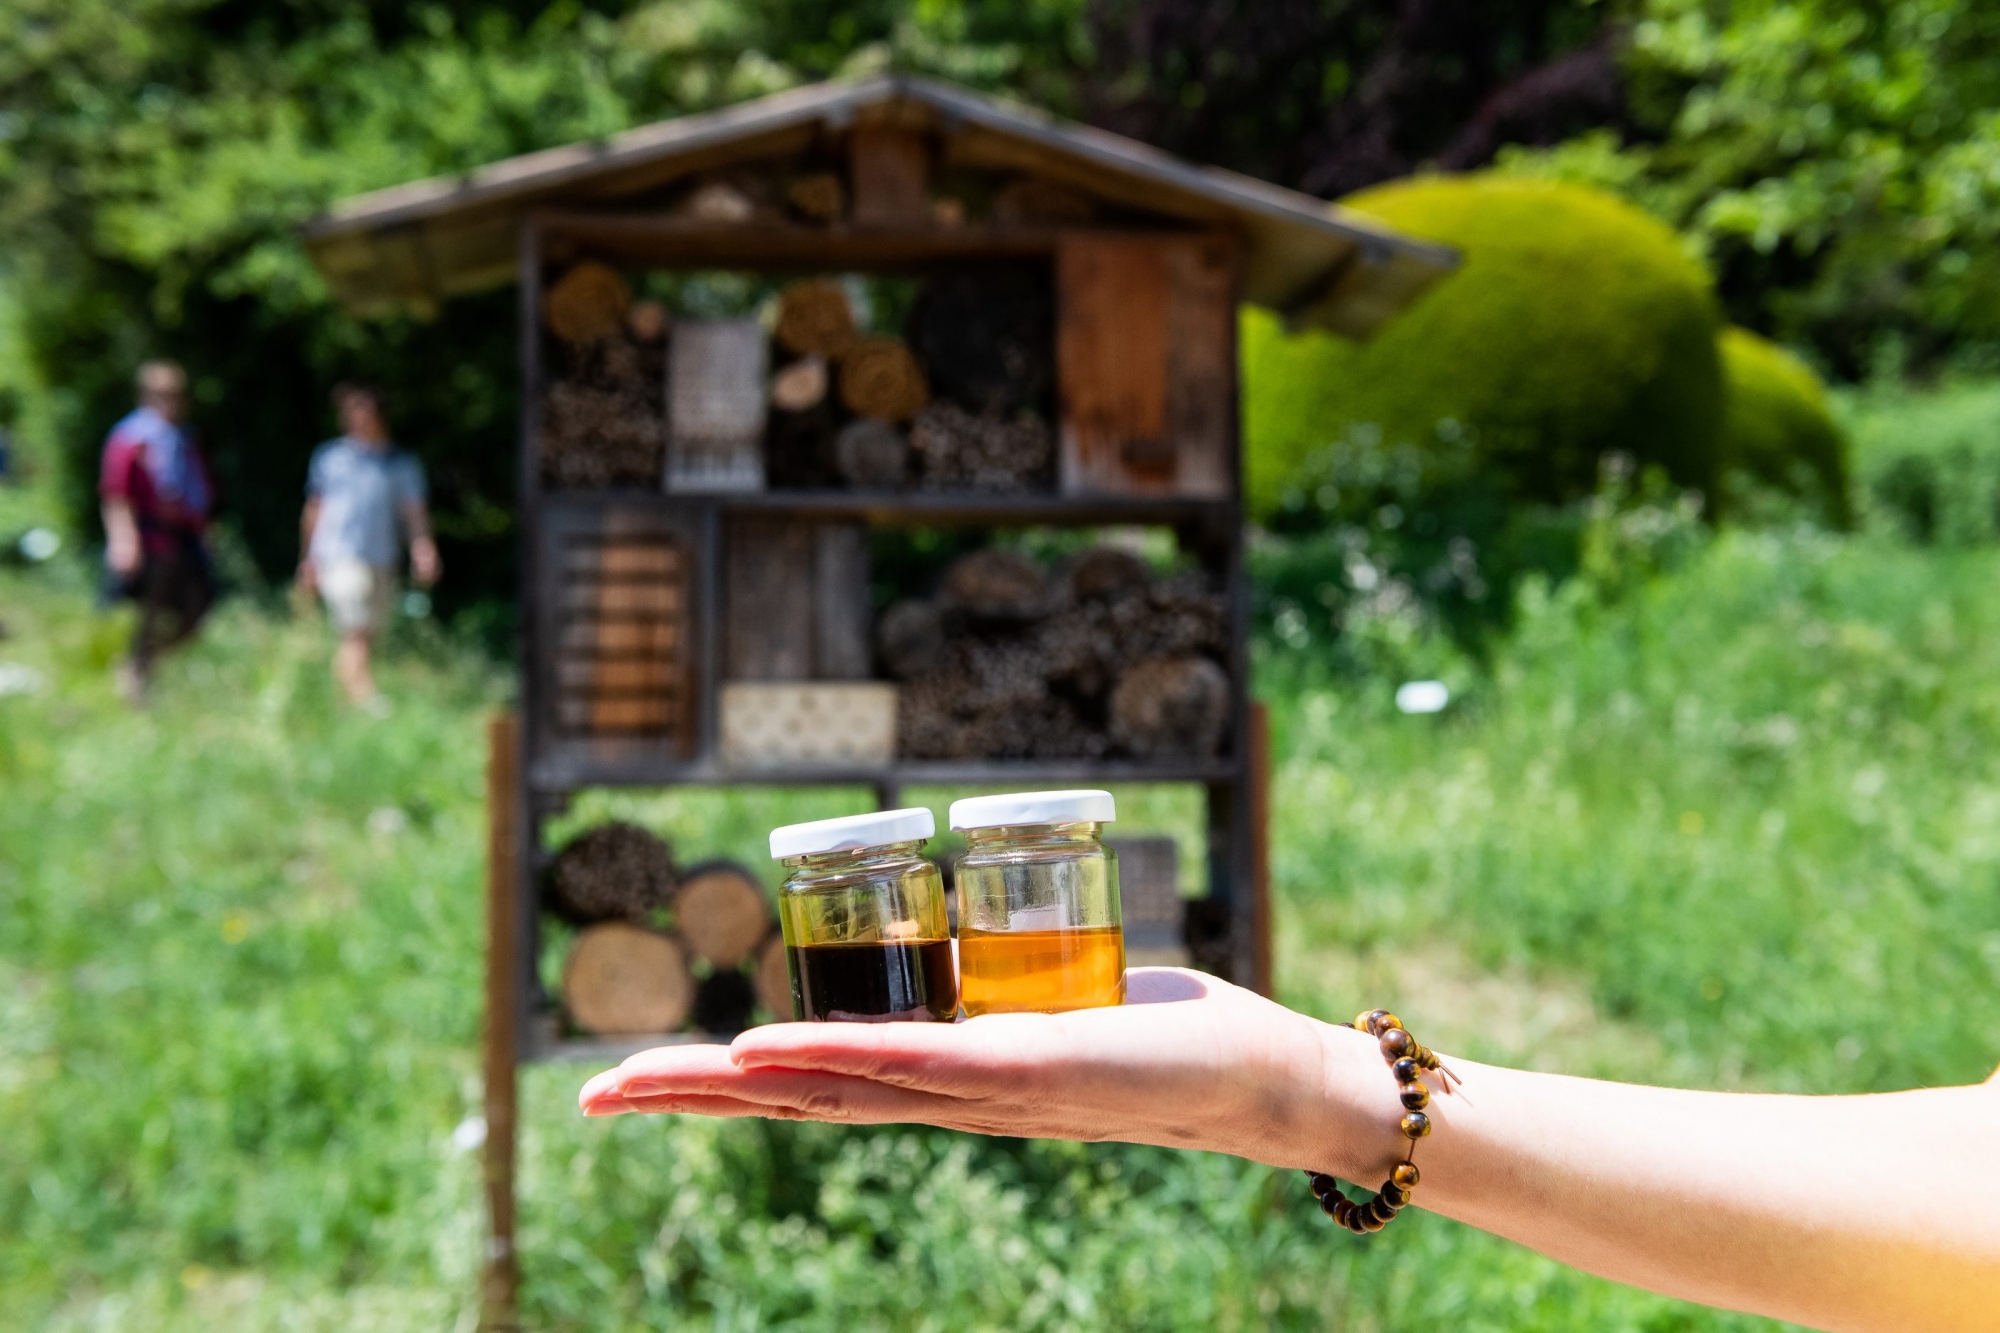 Journee mondiale des abeilles au jardin botanique.

Neuchatel, le 20 mai 2018.
Photo : Lucas Vuitel